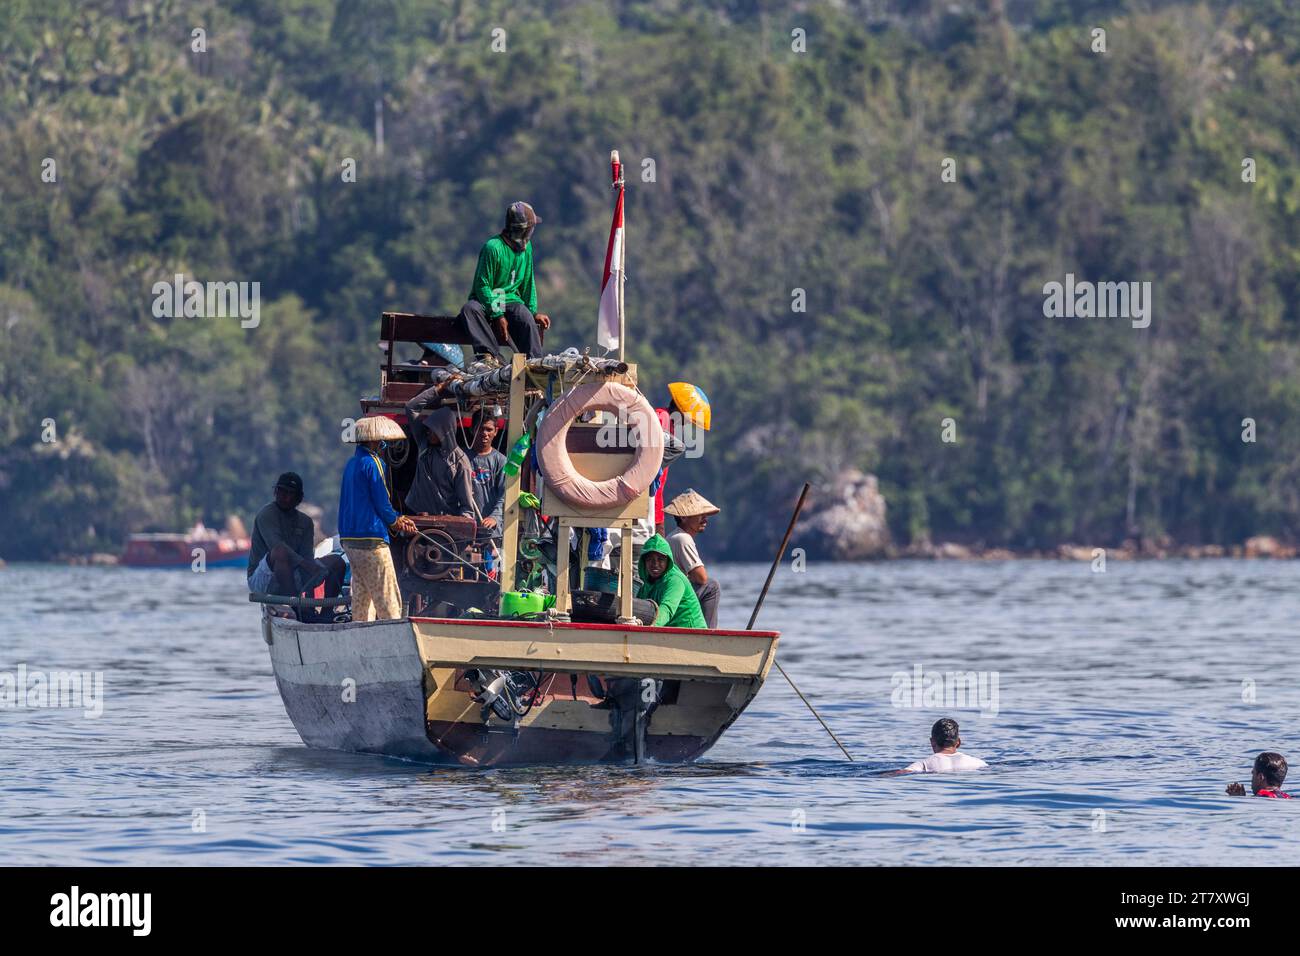 Pescatore di tonno che recupera una rete a circuizione, Bangka Island, al largo della punta nordorientale di Sulawesi, Indonesia, Sud-est asiatico, Asia Foto Stock